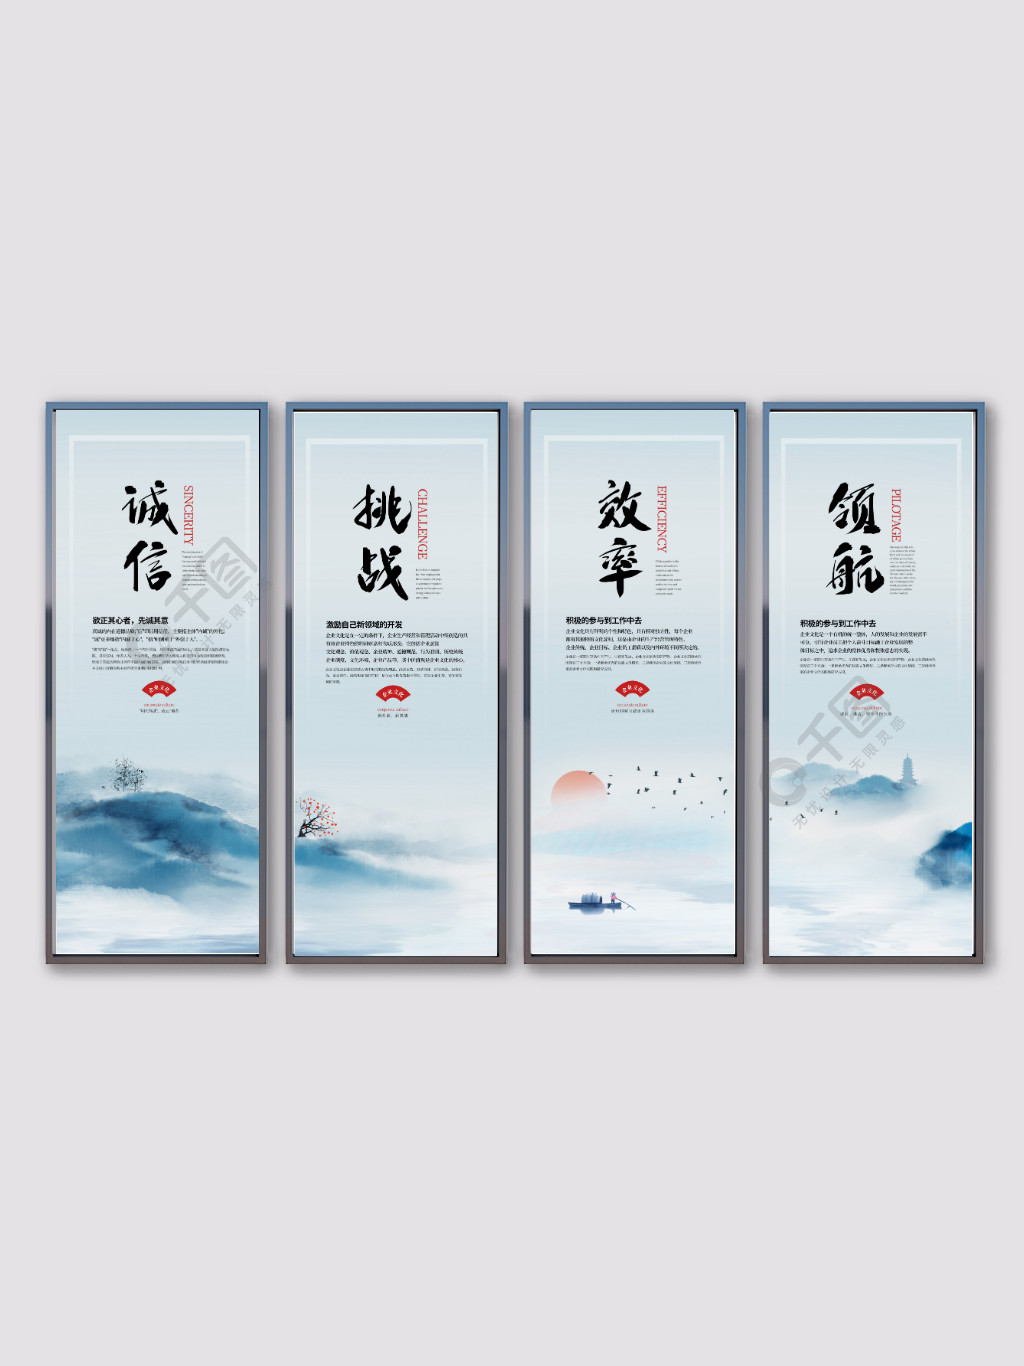 简约中国风水墨企业文化励志标语室内挂画